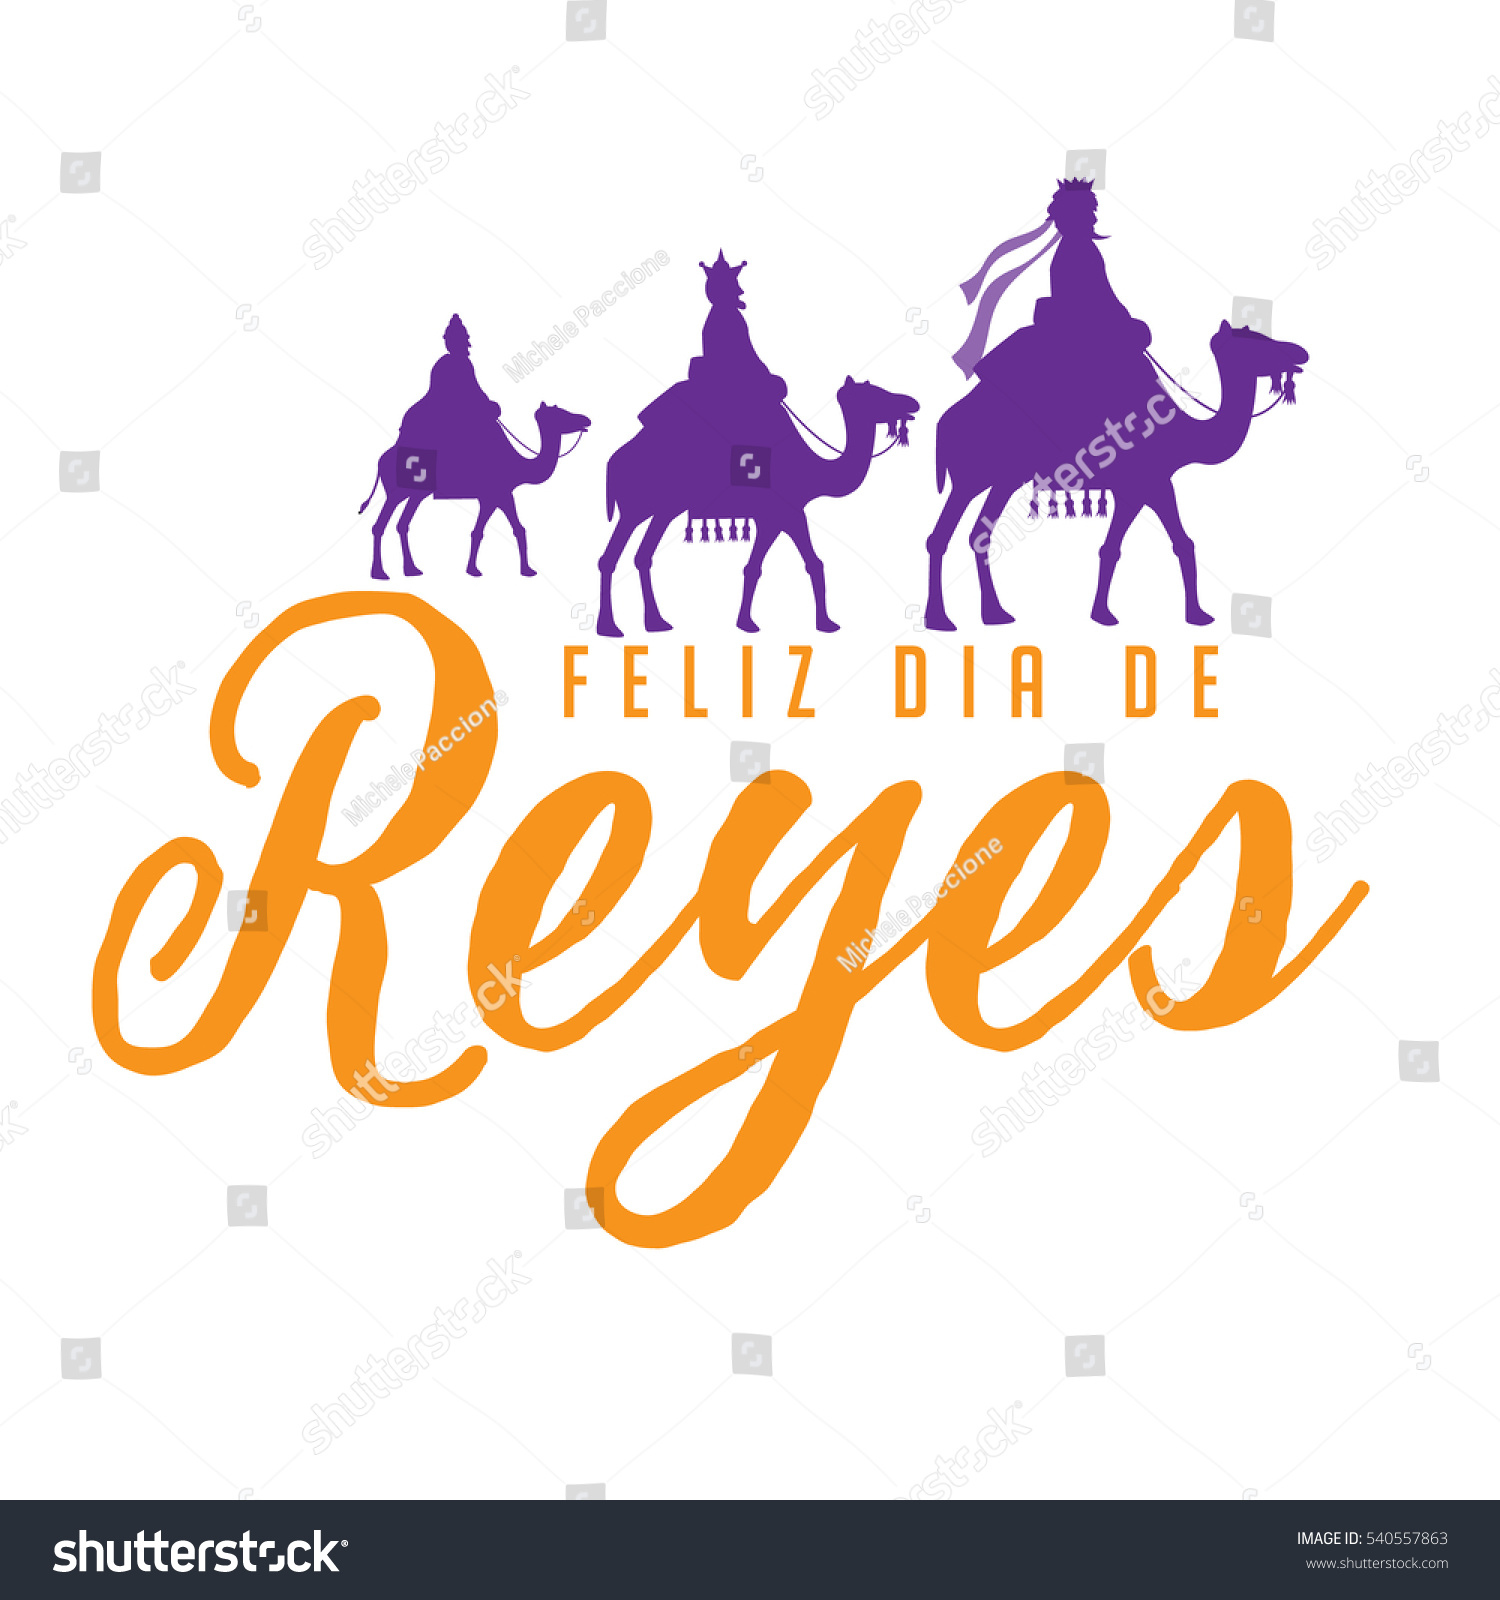 La verdad no hace amigos, Rafael Guerrero Stock-vector-feliz-dia-de-reyes-happy-day-of-kings-featuring-the-three-wise-men-riding-camels-eps-vector-540557863